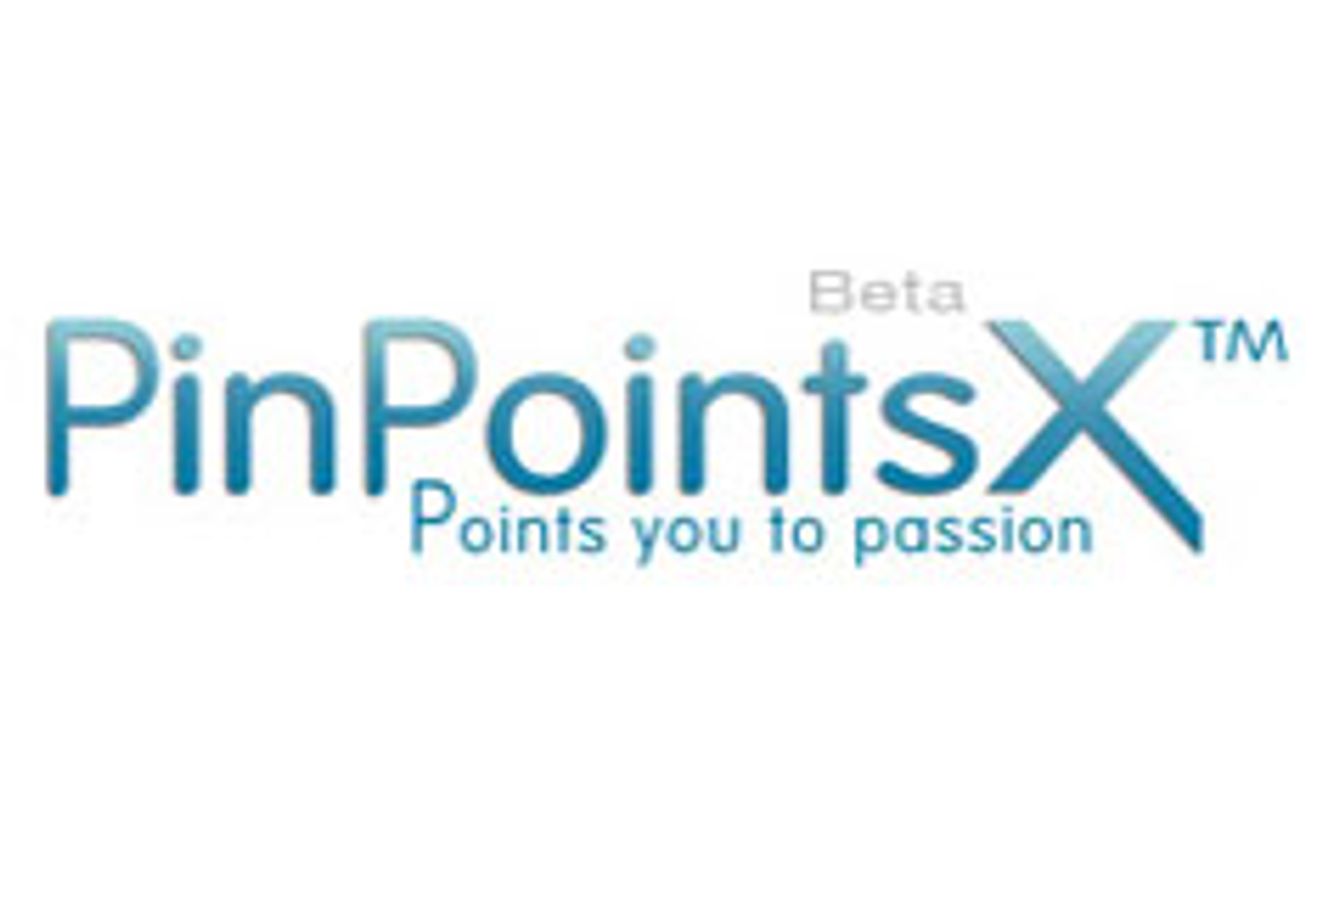 Pinpointsx.com